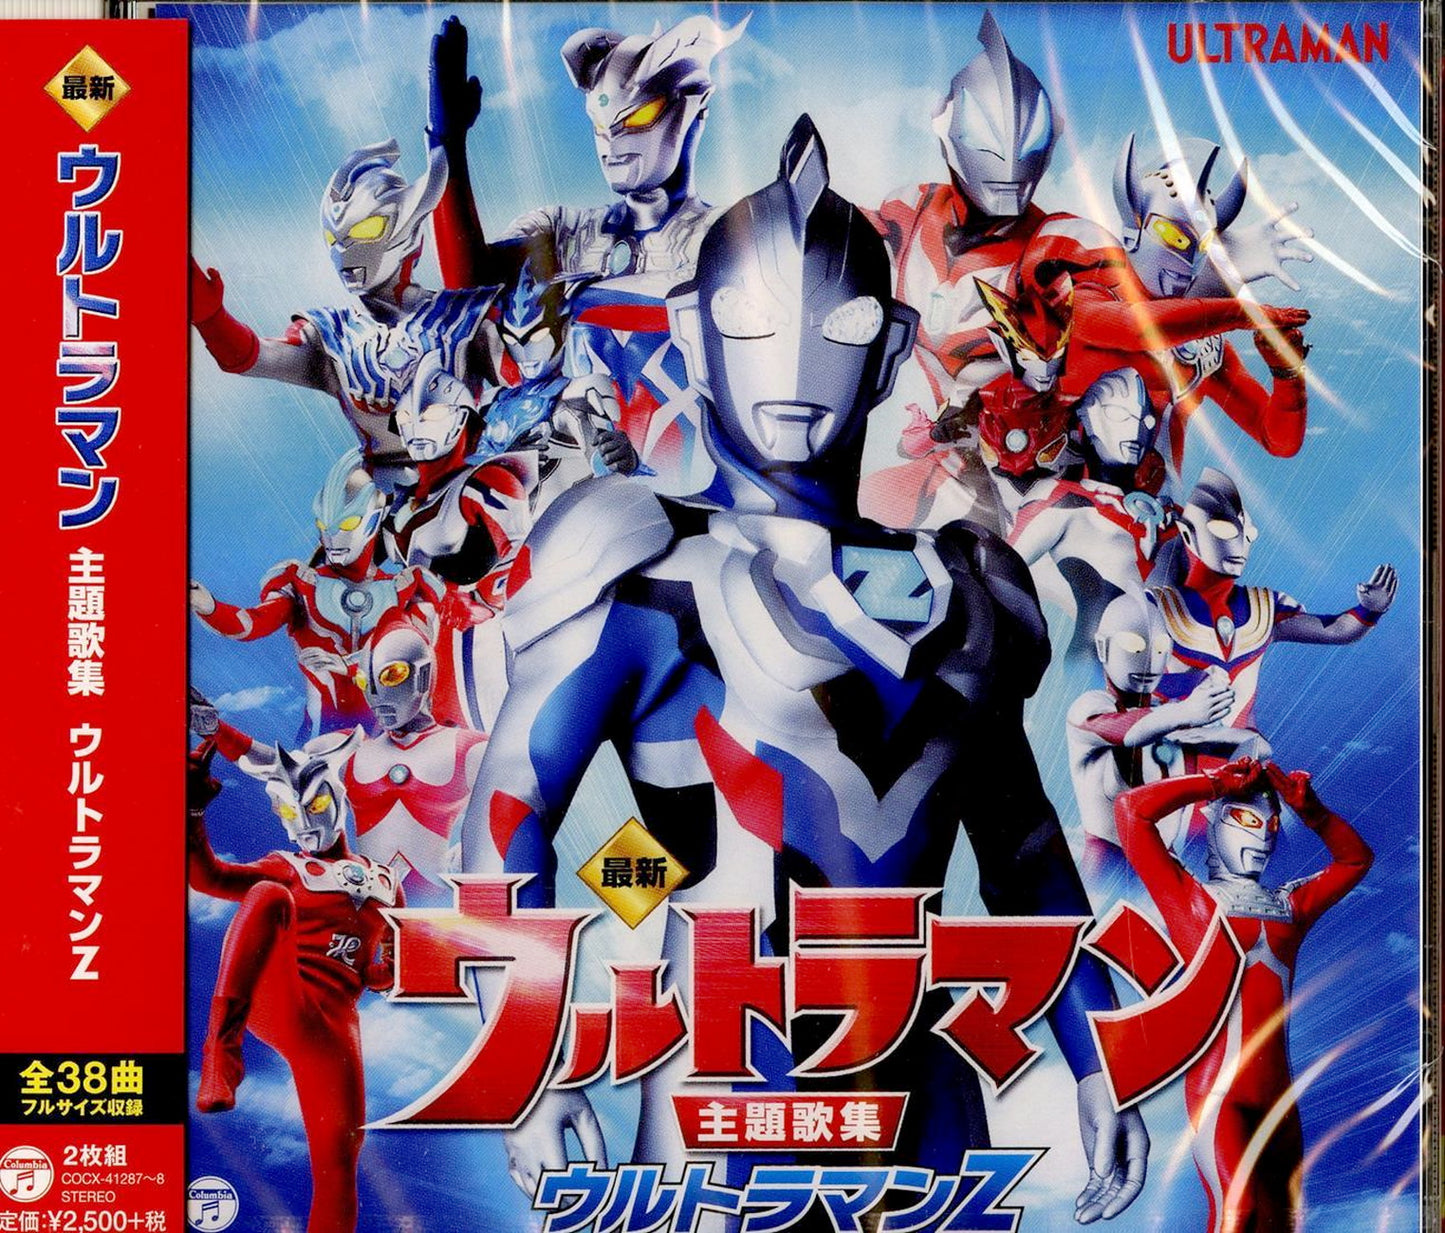 Ultraman Z - Saishin Ultraman Shudaika Shu Ultraman Z - Japan  2 CD